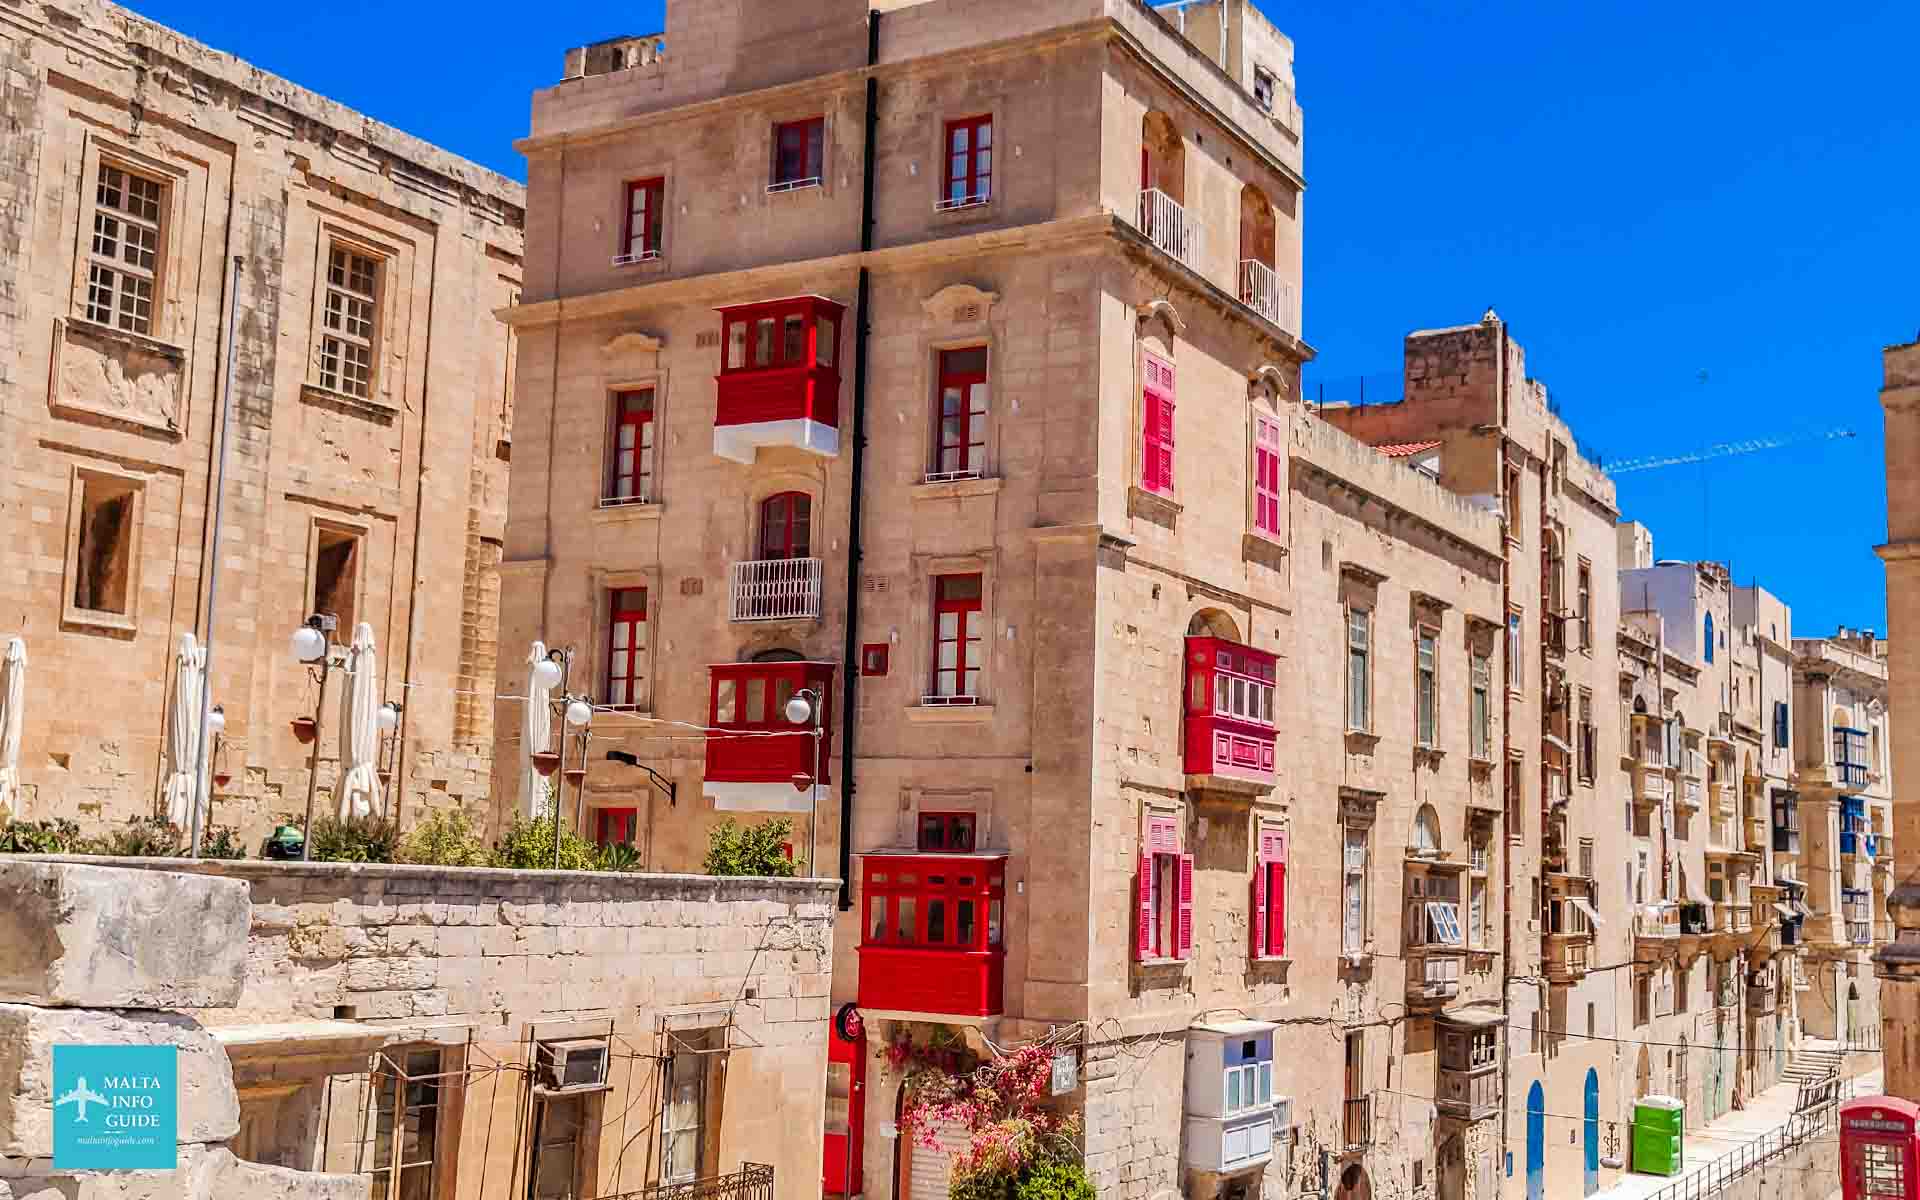 Valletta buildings in Malta.